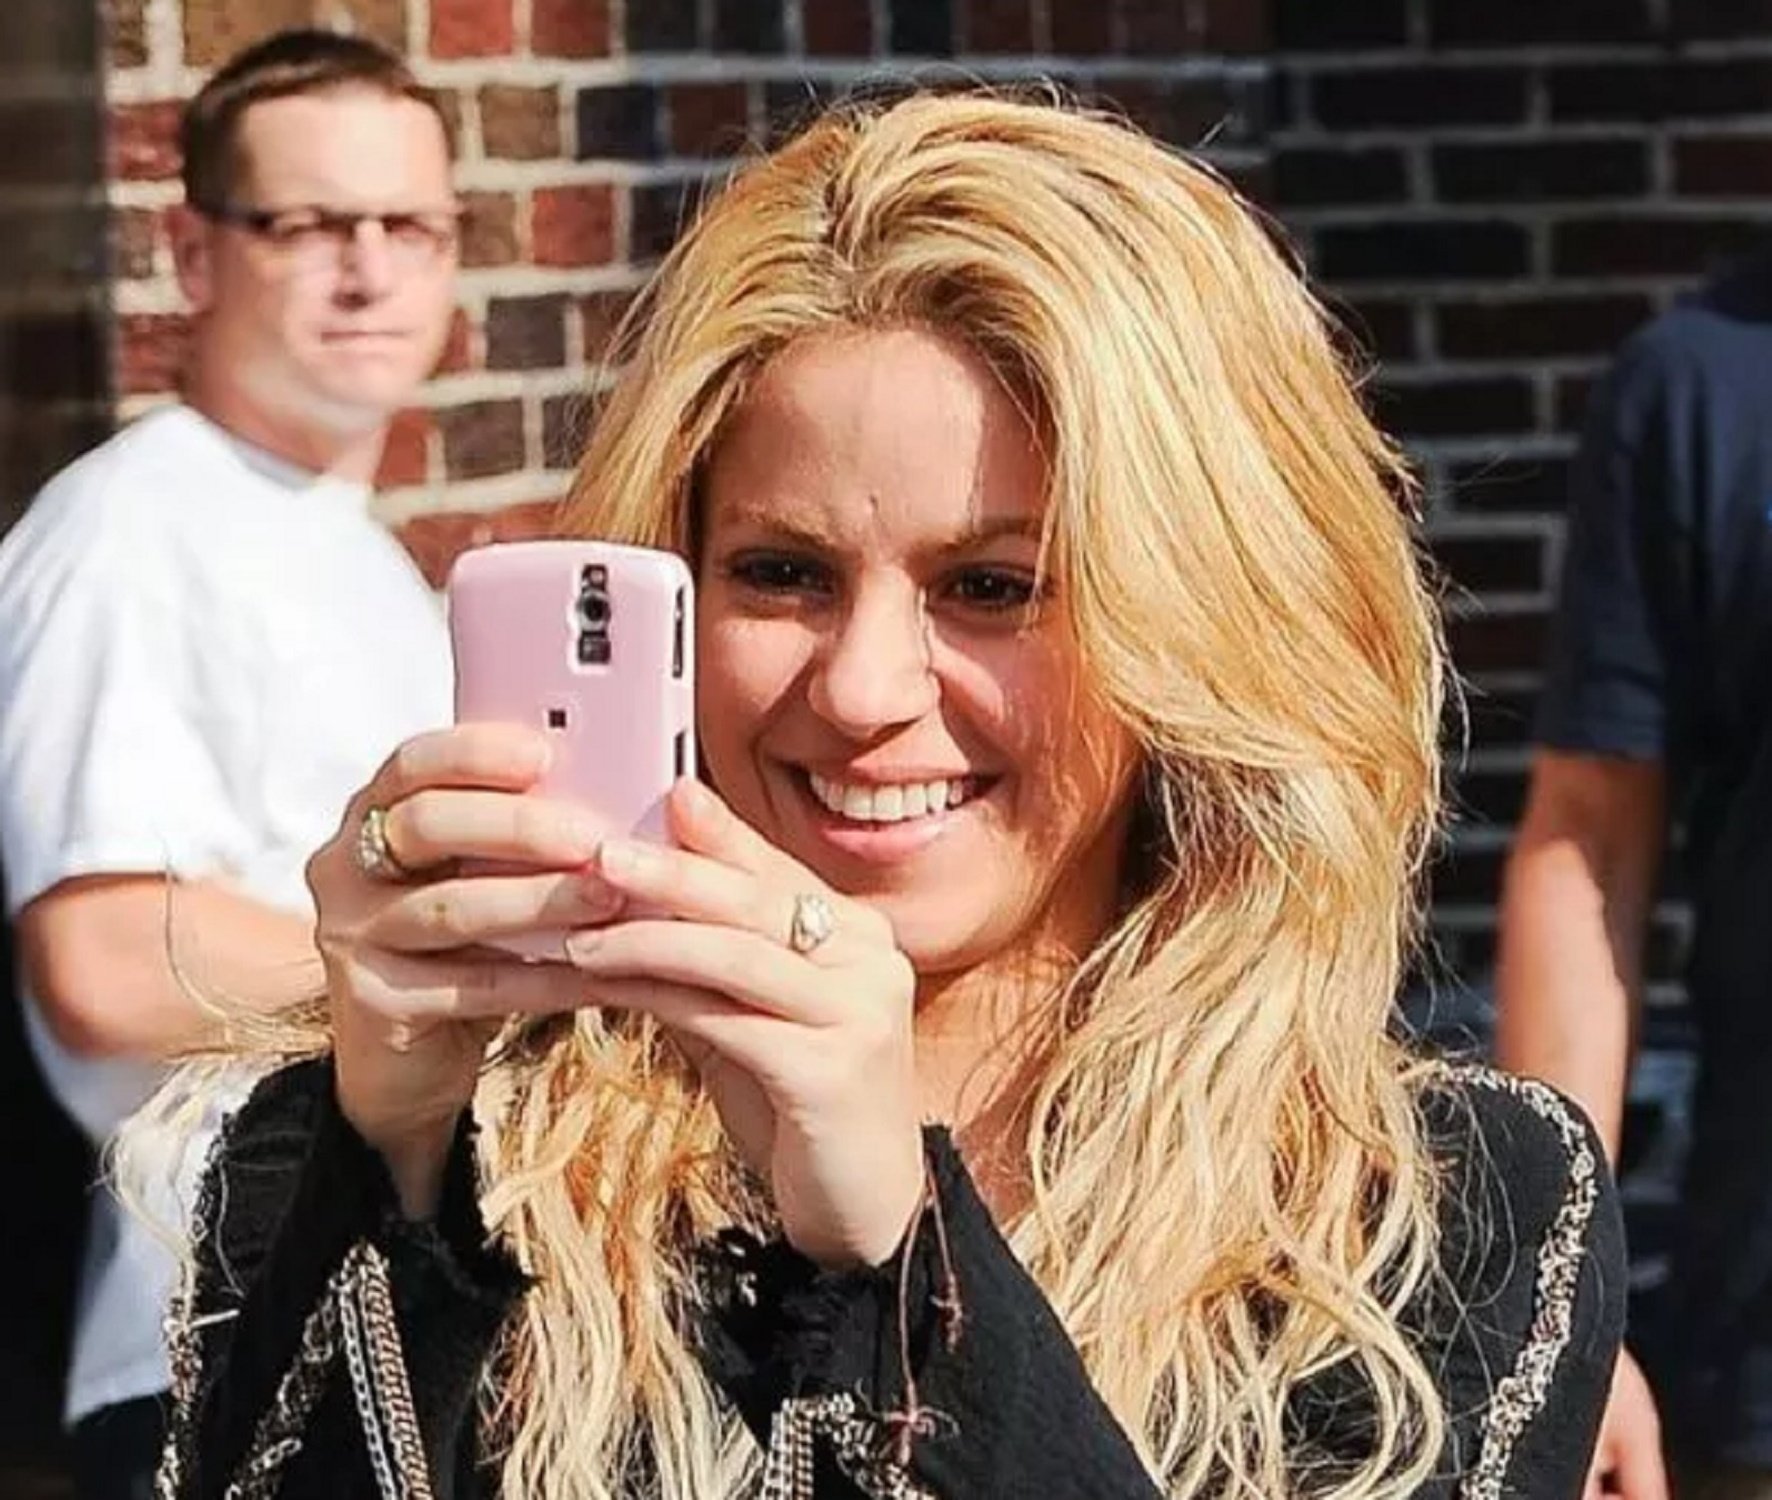 El nou amor de Shakira és a Miami i no a Espanya